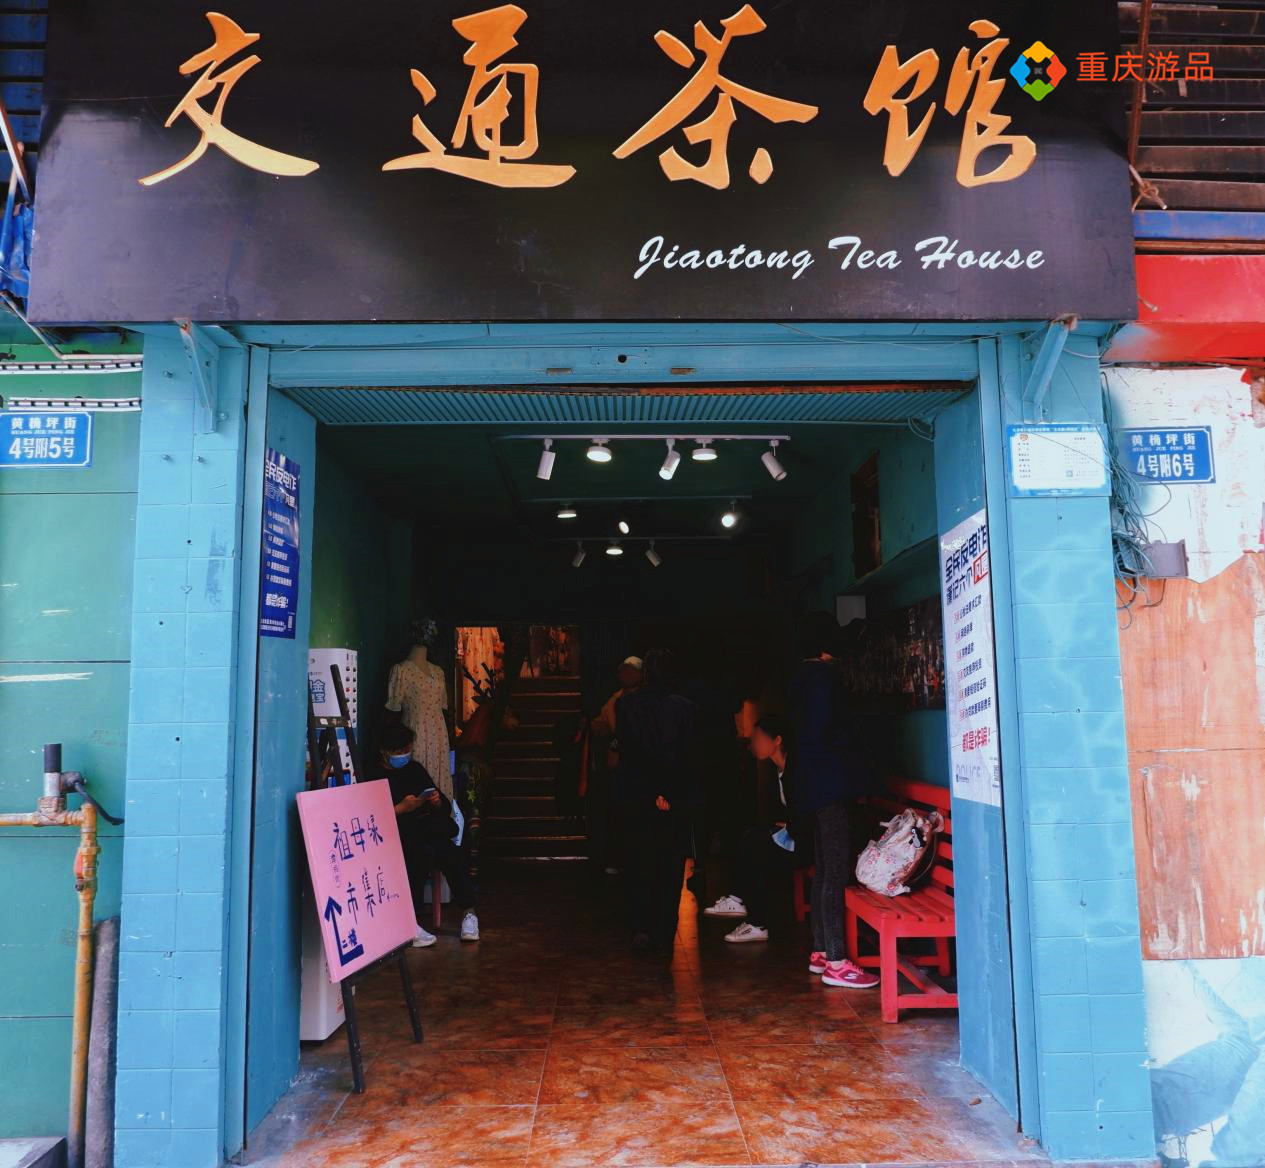 重庆的一家老茶馆，外表破烂不堪，却是深受明星喜爱的拍摄点